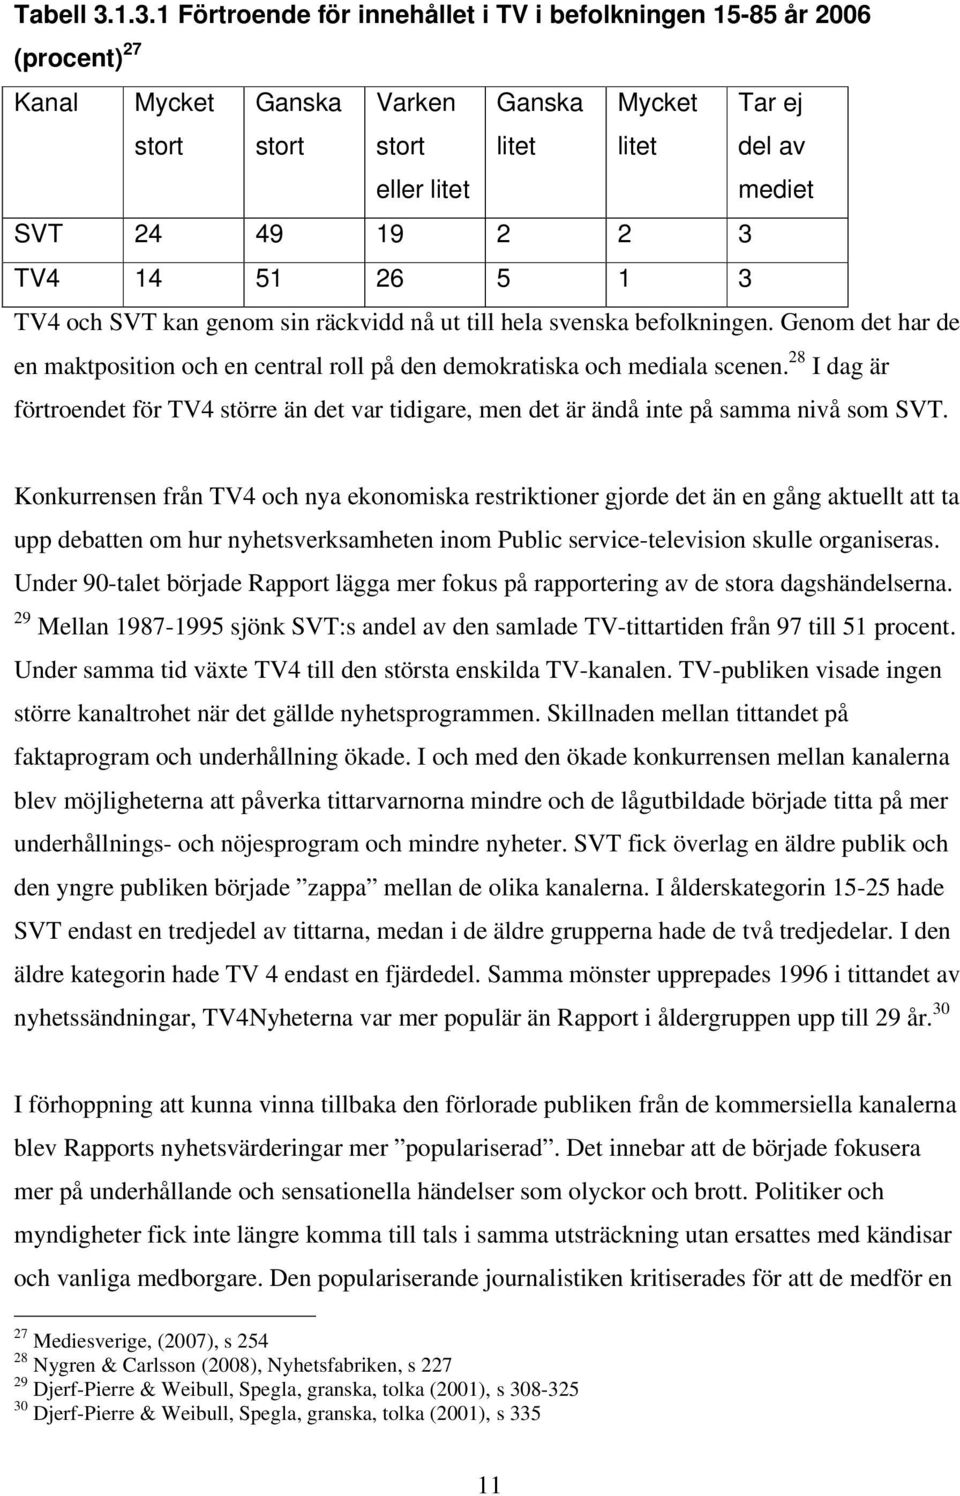 3 TV4 14 51 26 5 1 3 TV4 och SVT kan genom sin räckvidd nå ut till hela svenska befolkningen. Genom det har de en maktposition och en central roll på den demokratiska och mediala scenen.